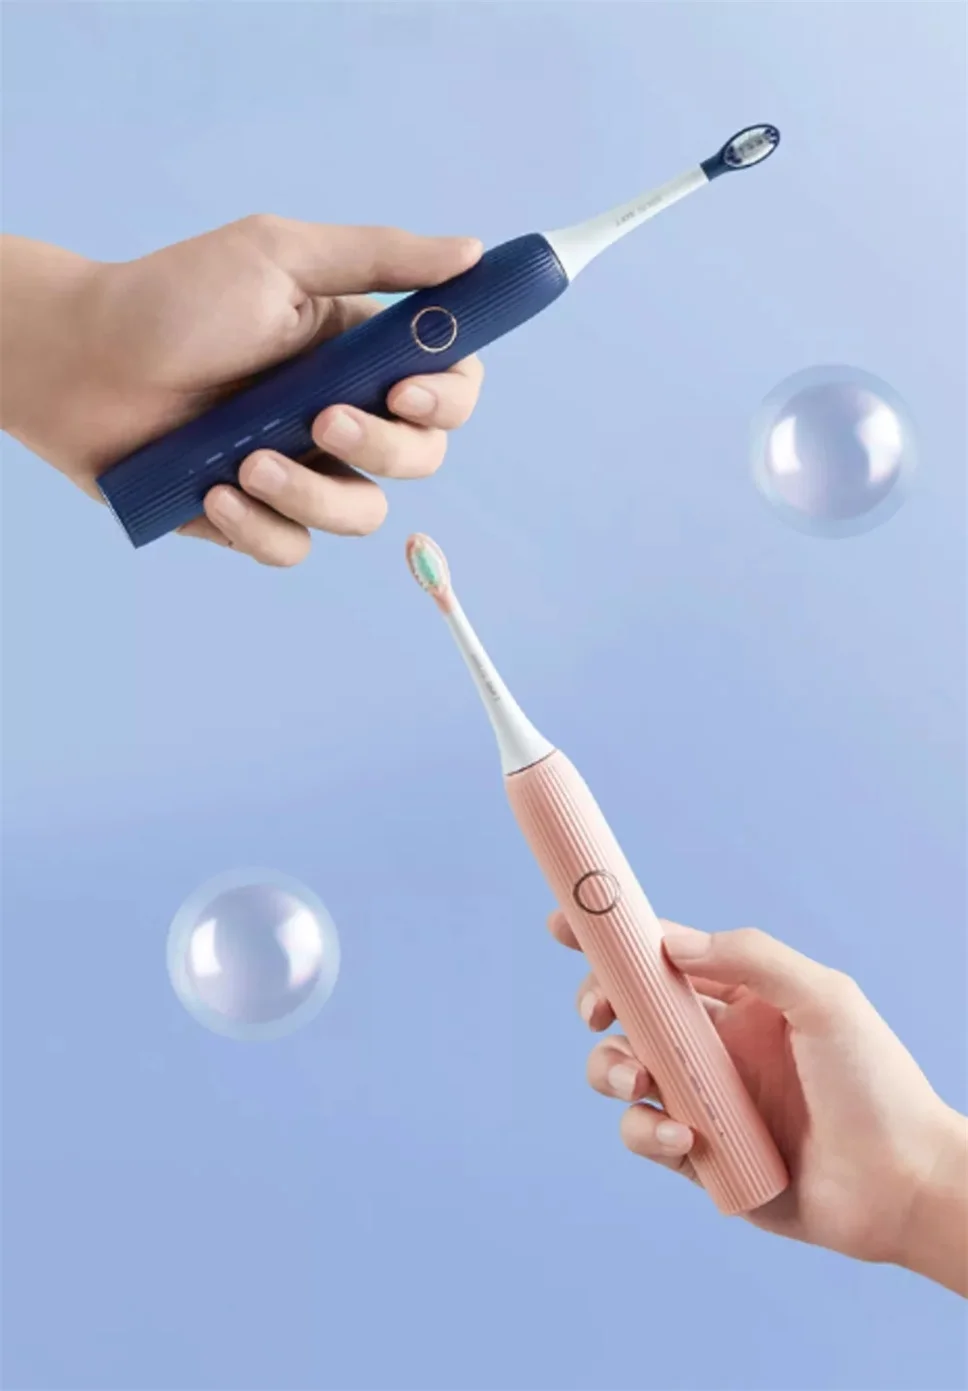 XiaoMi SOOCAS V1 звуковая электрическая зубная щетка IPX7 Водонепроницаемая зубная щетка(с 2 головками) электрическая зубная щетка для чистки полости рта